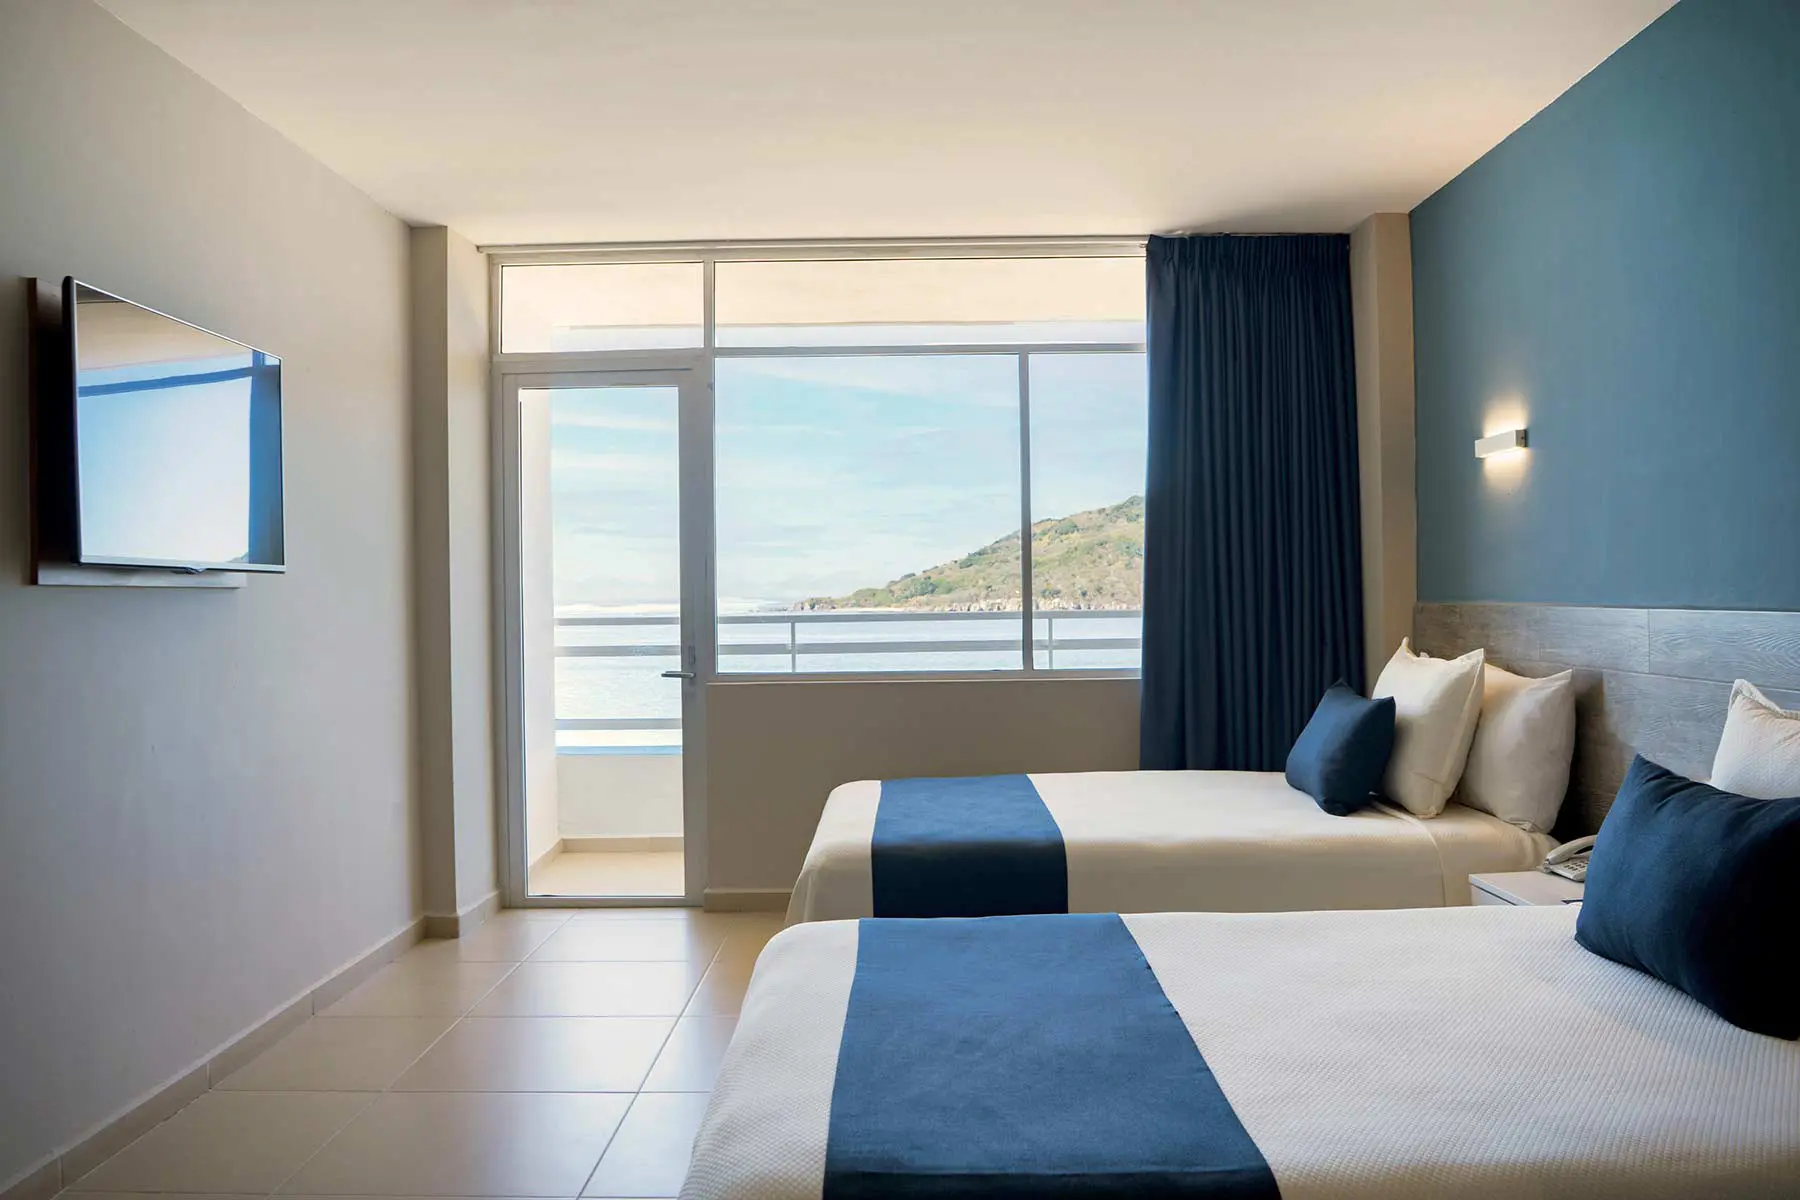 Habitacion con vista al mar para cuatro personas en hotel Star Palace Mazatlan